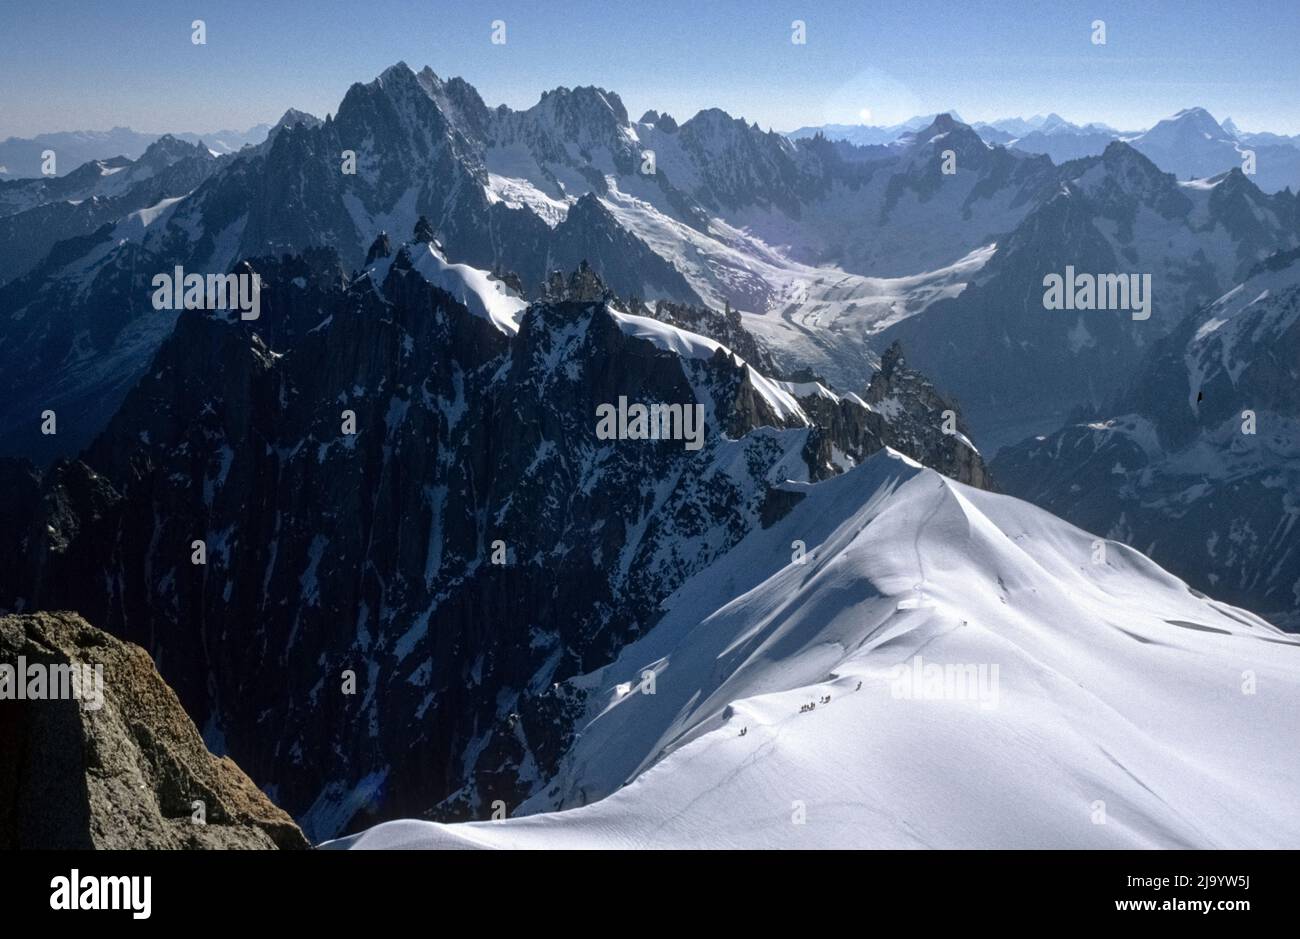 Aiguilles de Chamonix et Glacier de Talèfre avec des grimpeurs sur la crête de neige vue de l'aiguille du midi, Chamonix-Mont-blanc, France, 1990 Banque D'Images